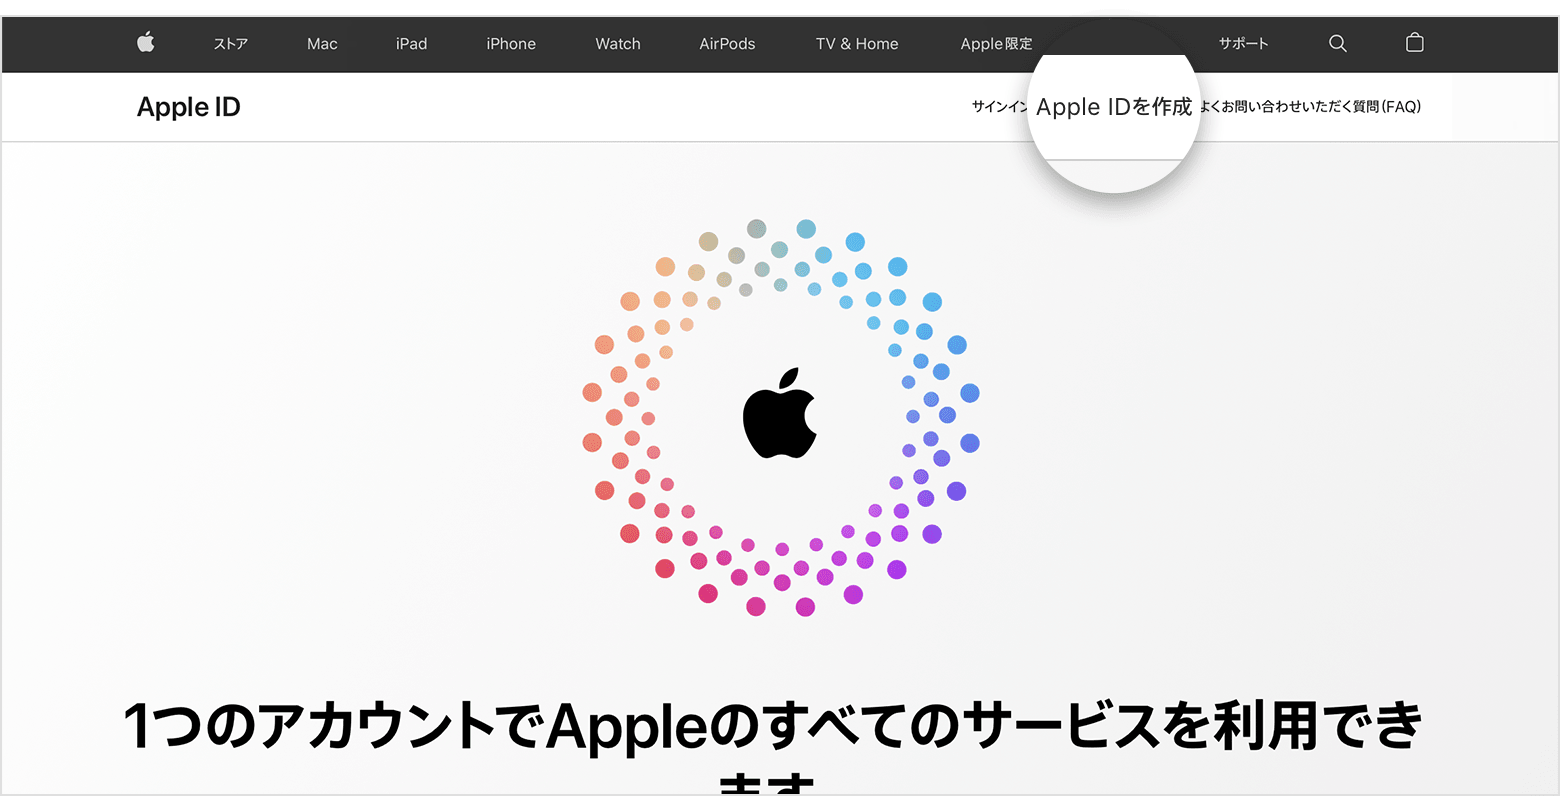 Web ページに「Apple ID を作成」リンクが表示されているところ